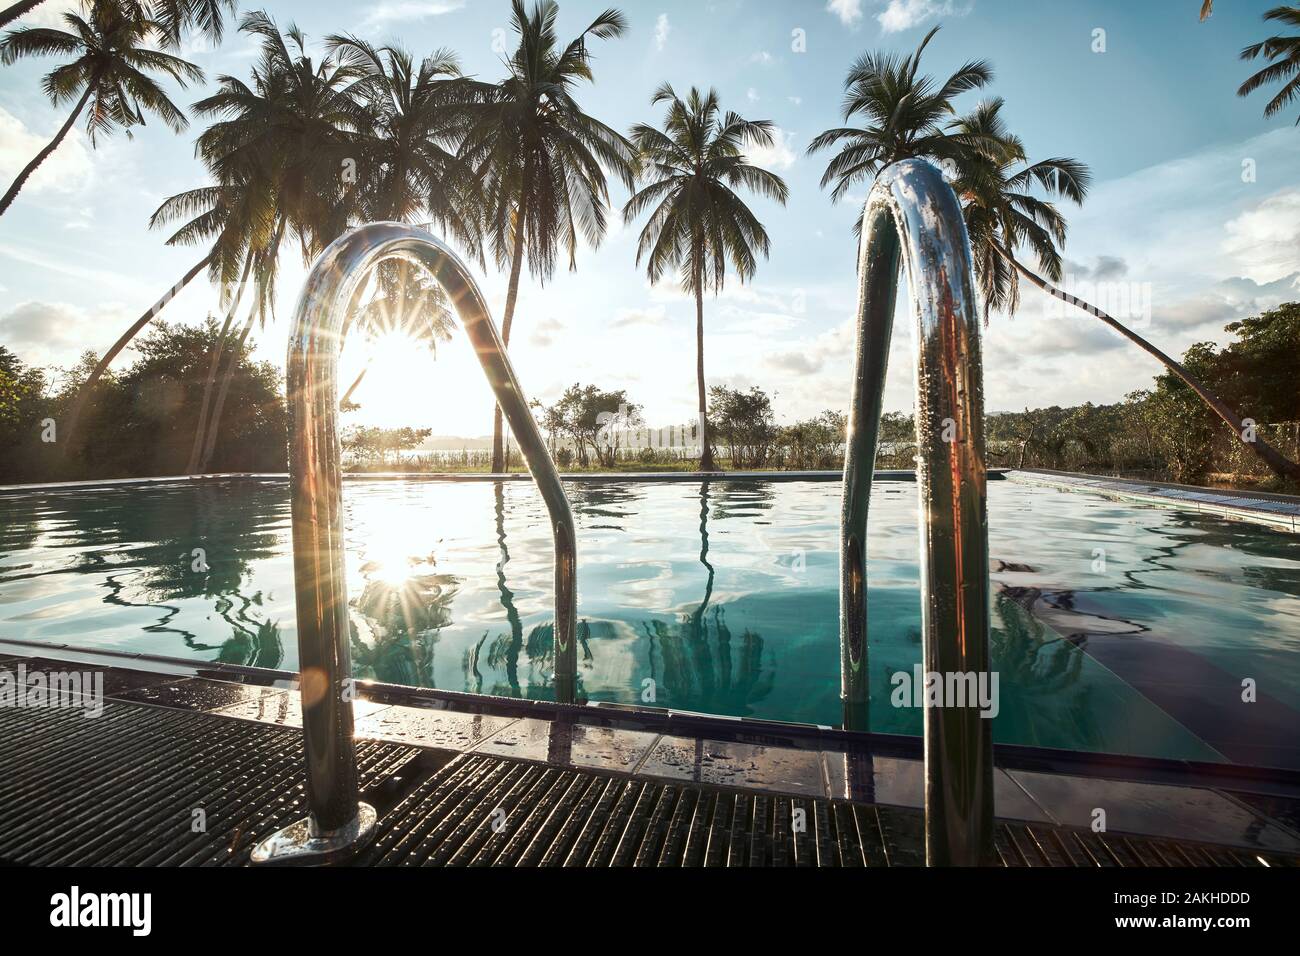 Relajación en lugar turístico. Piscina en medio de palmeras de coco contra la laguna al atardecer. Foto de stock